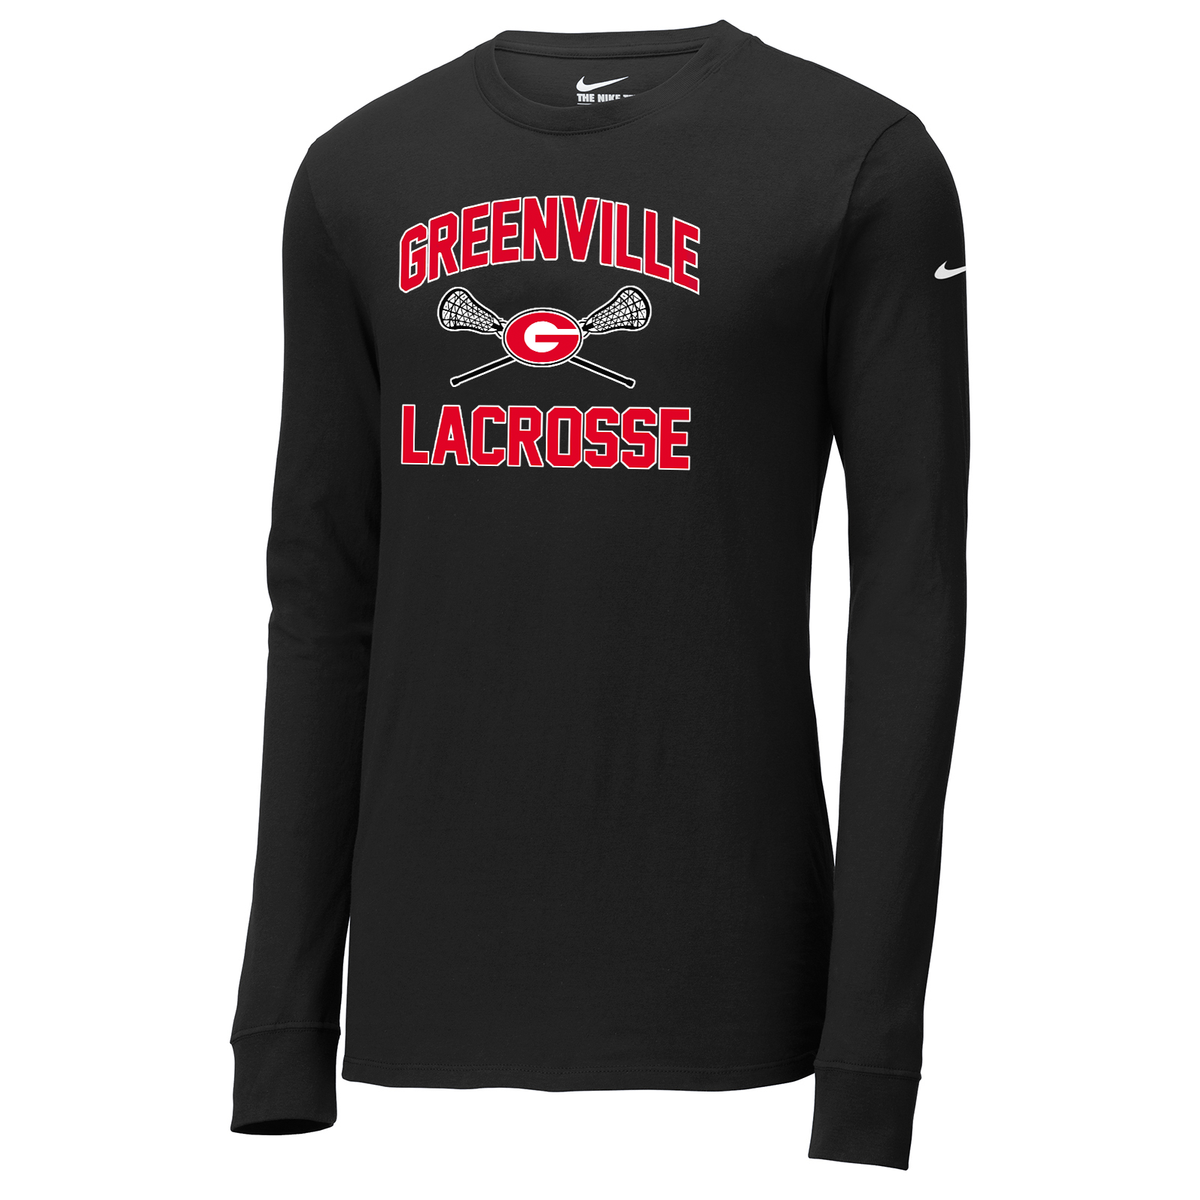 Greenville Girls Lacrosse Nike Core Cotton Long Sleeve Tee